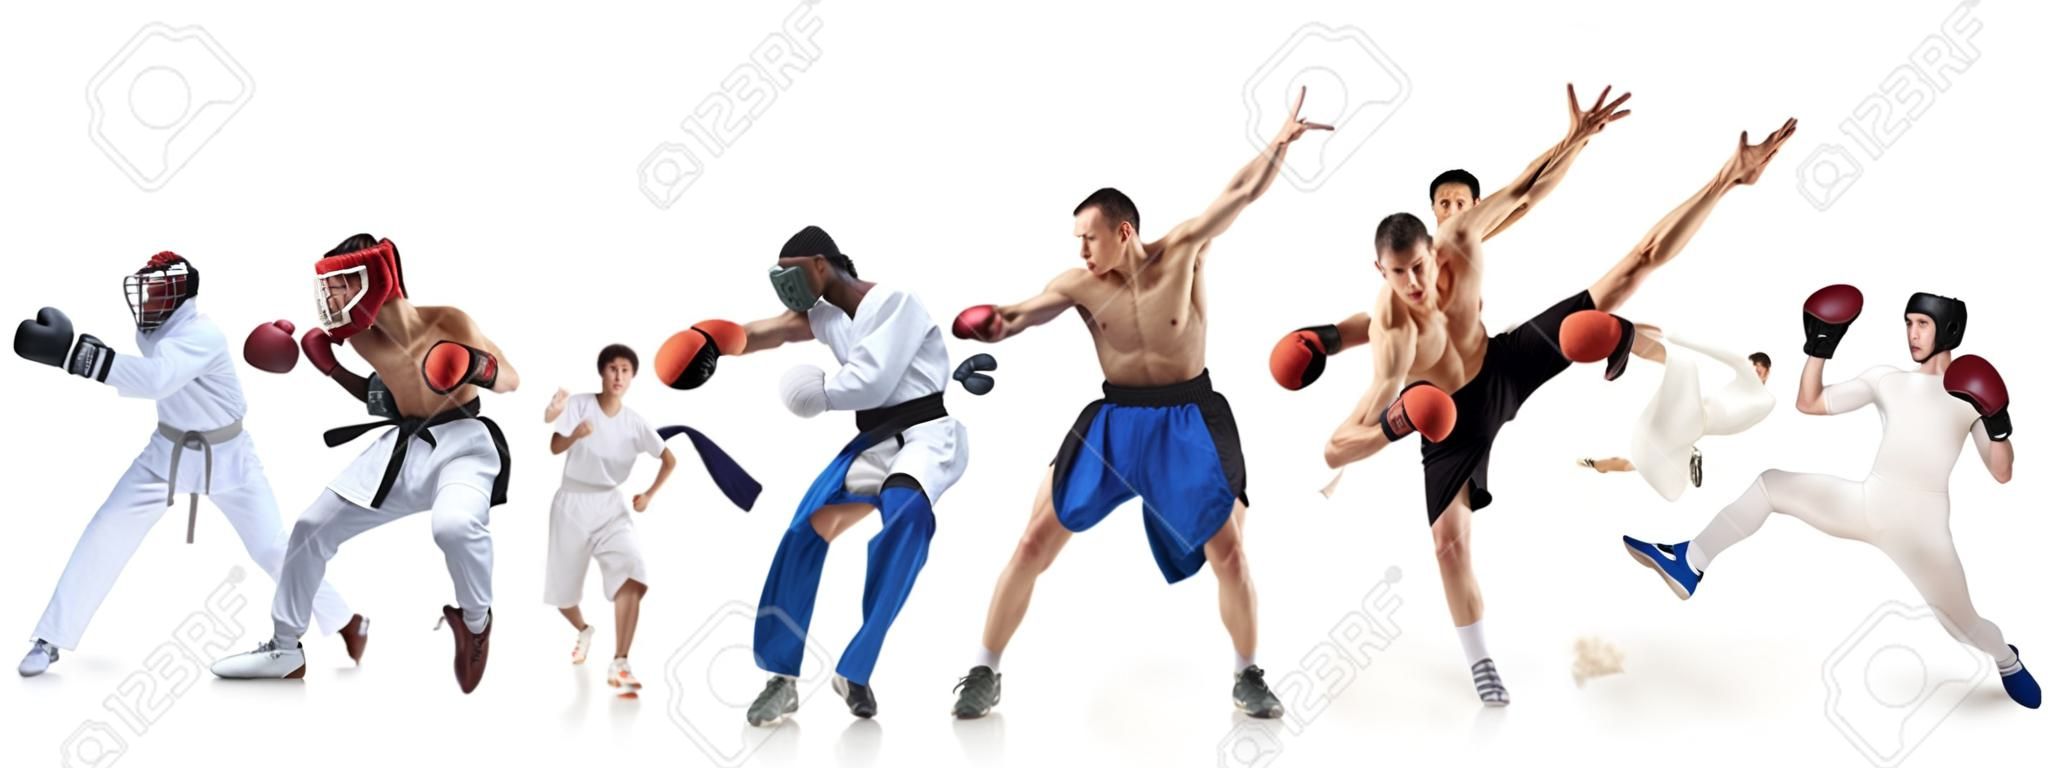 Collage sportif sur la boxe, le football, le football américain, le basket-ball, le hockey sur glace, l'escrime, le jogging, le taekwondo, le tennis